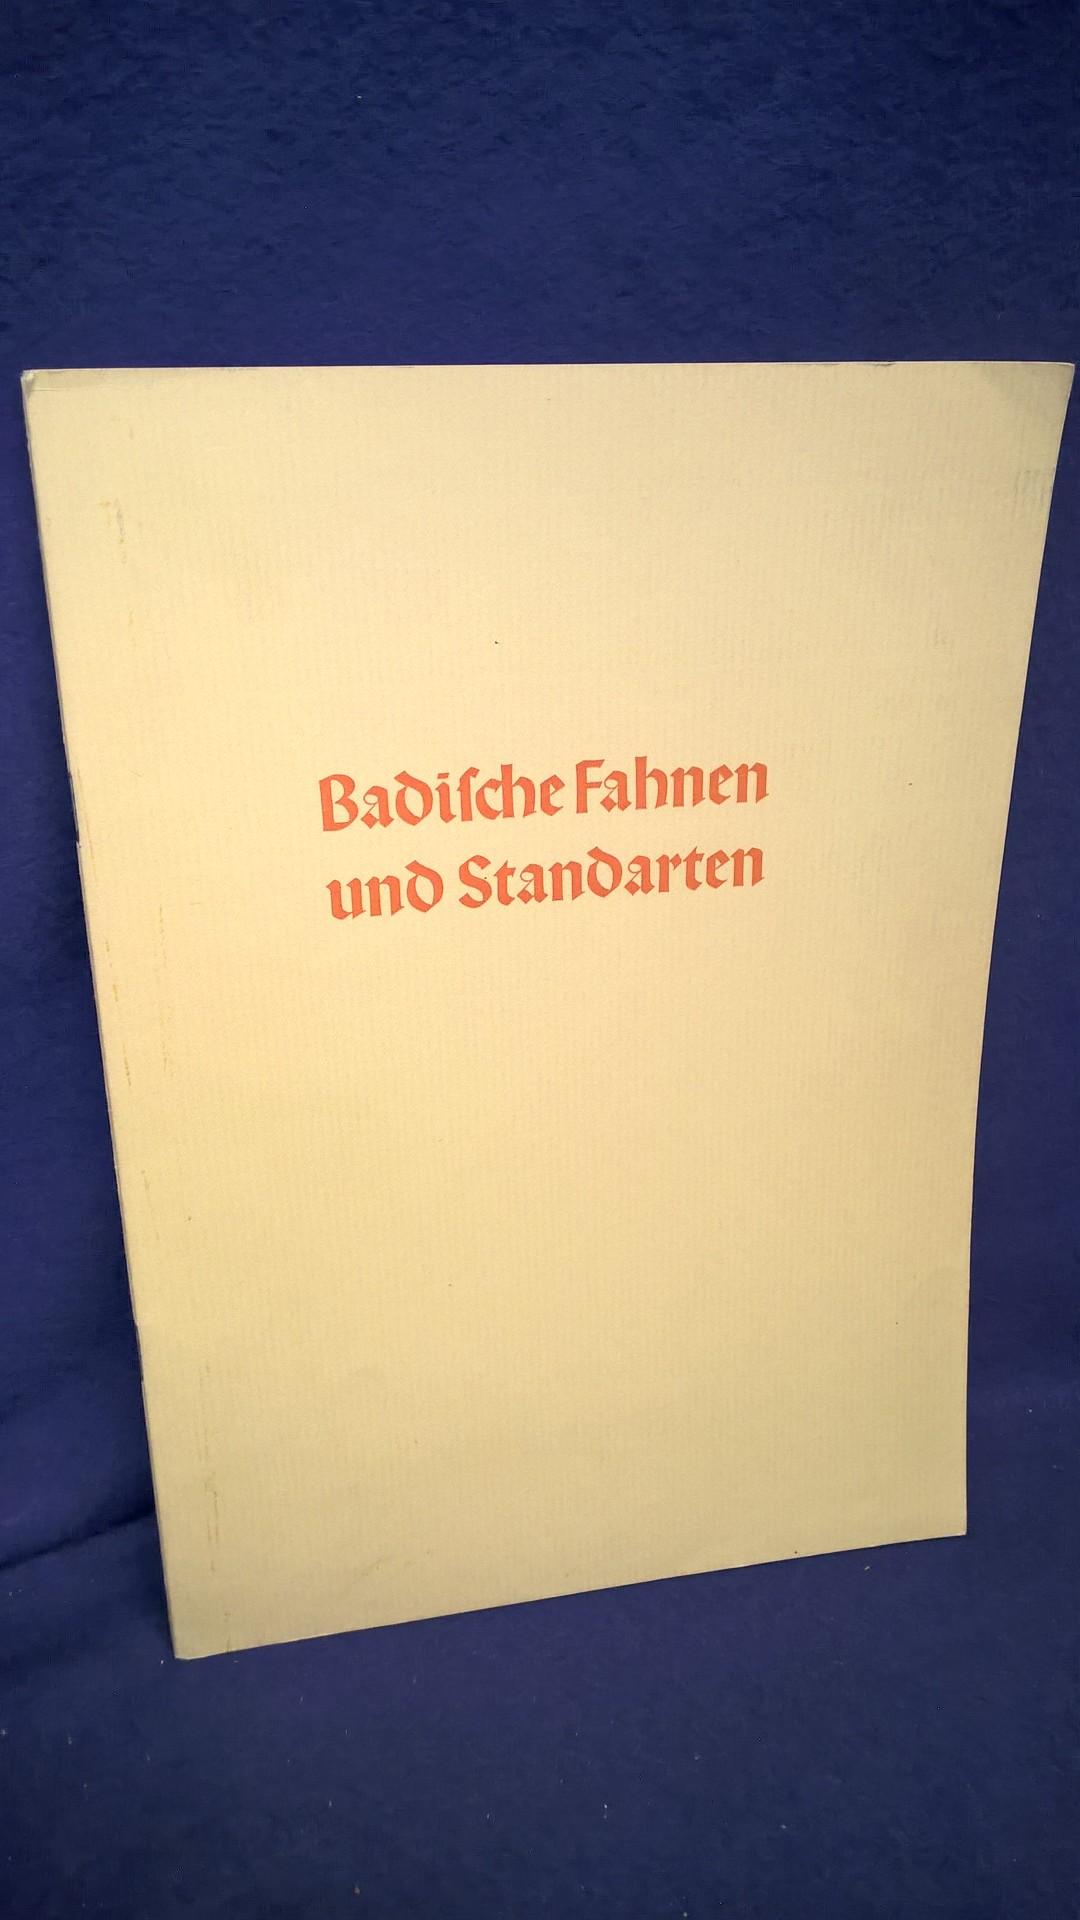 Badische Fahnen und Standarten. Amtliche Veröffentlichung des Armeemuseums Karlsruhe. Deutsche Wehr am Oberrhein.